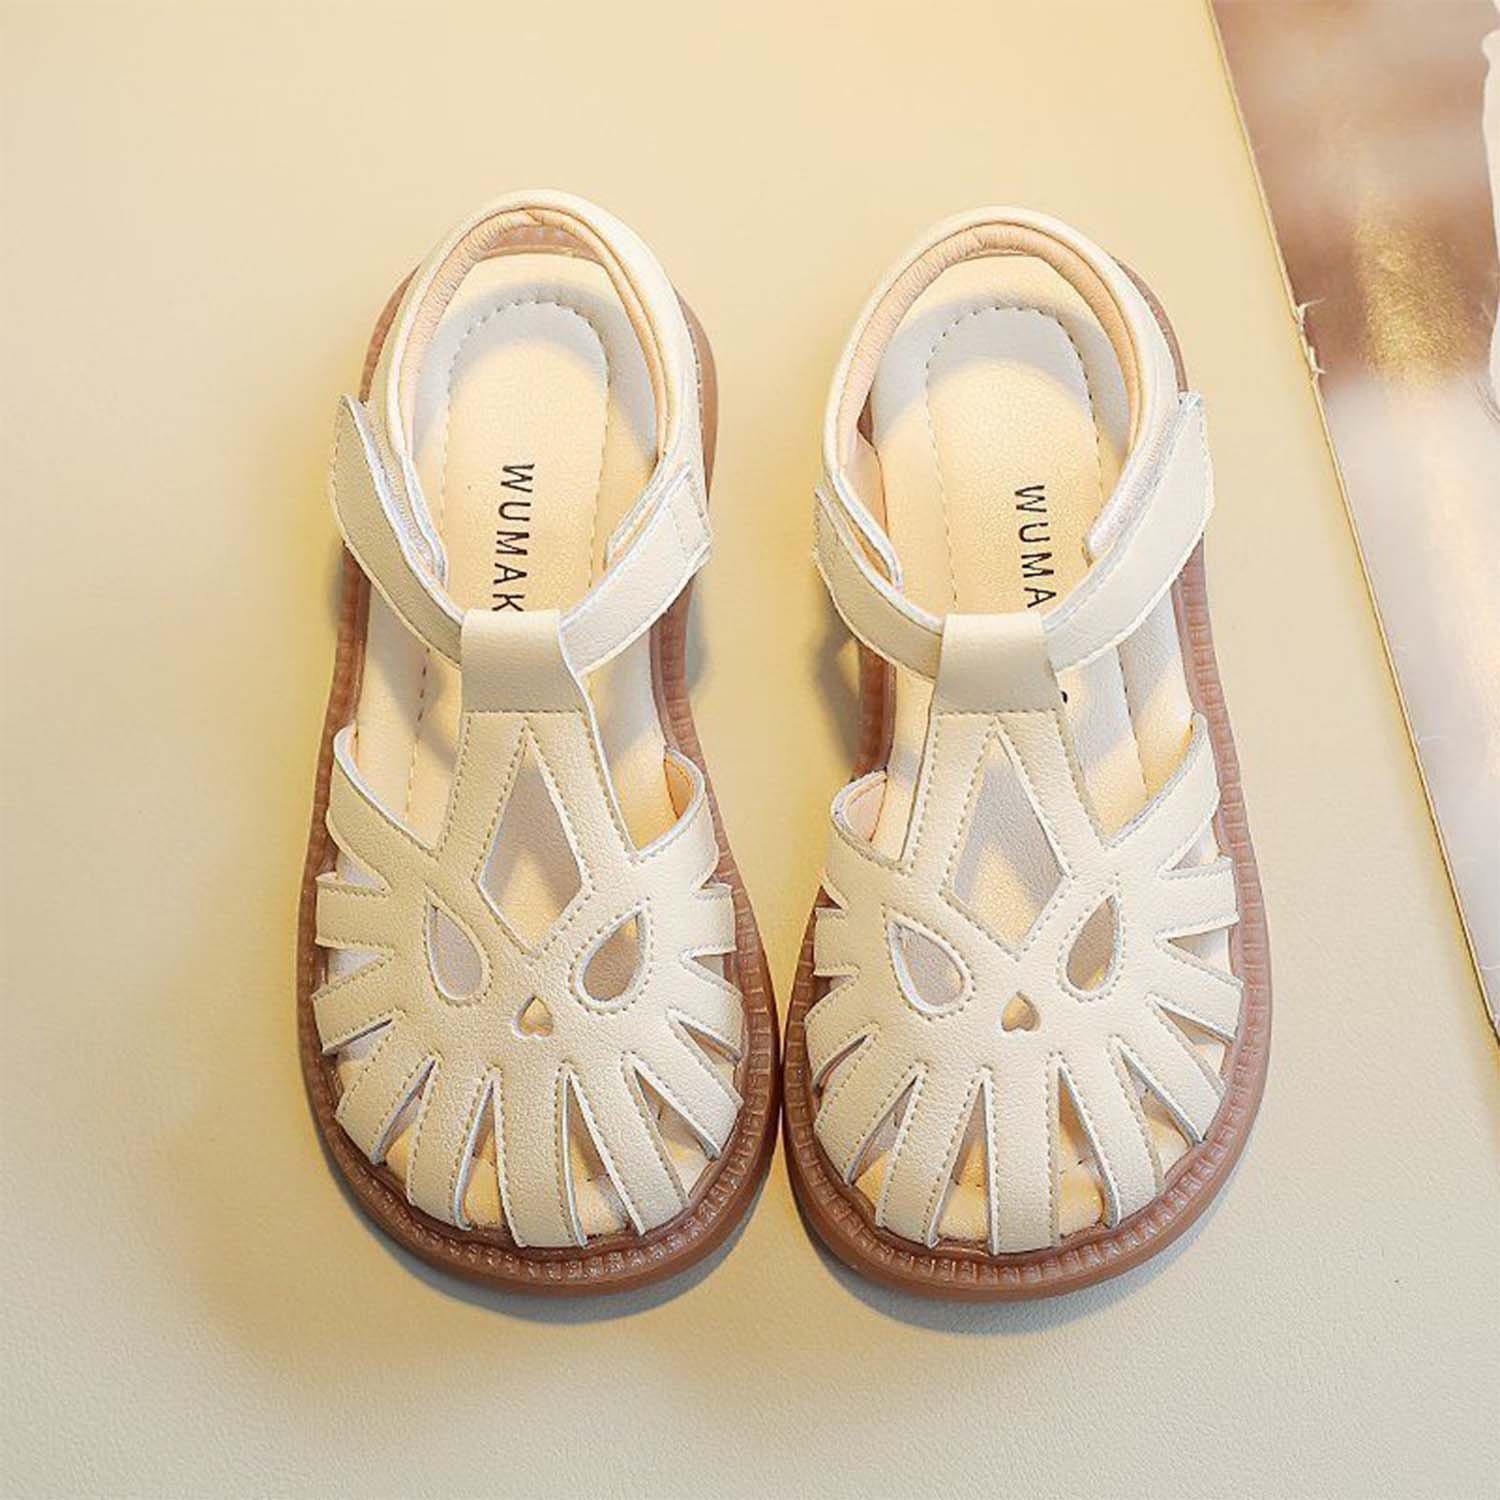 Die supergünstigen Neuerscheinungen dieser Woche Daisred Mädchen Sommer Schuhe Weiß Flach Babyschuhe Sandale